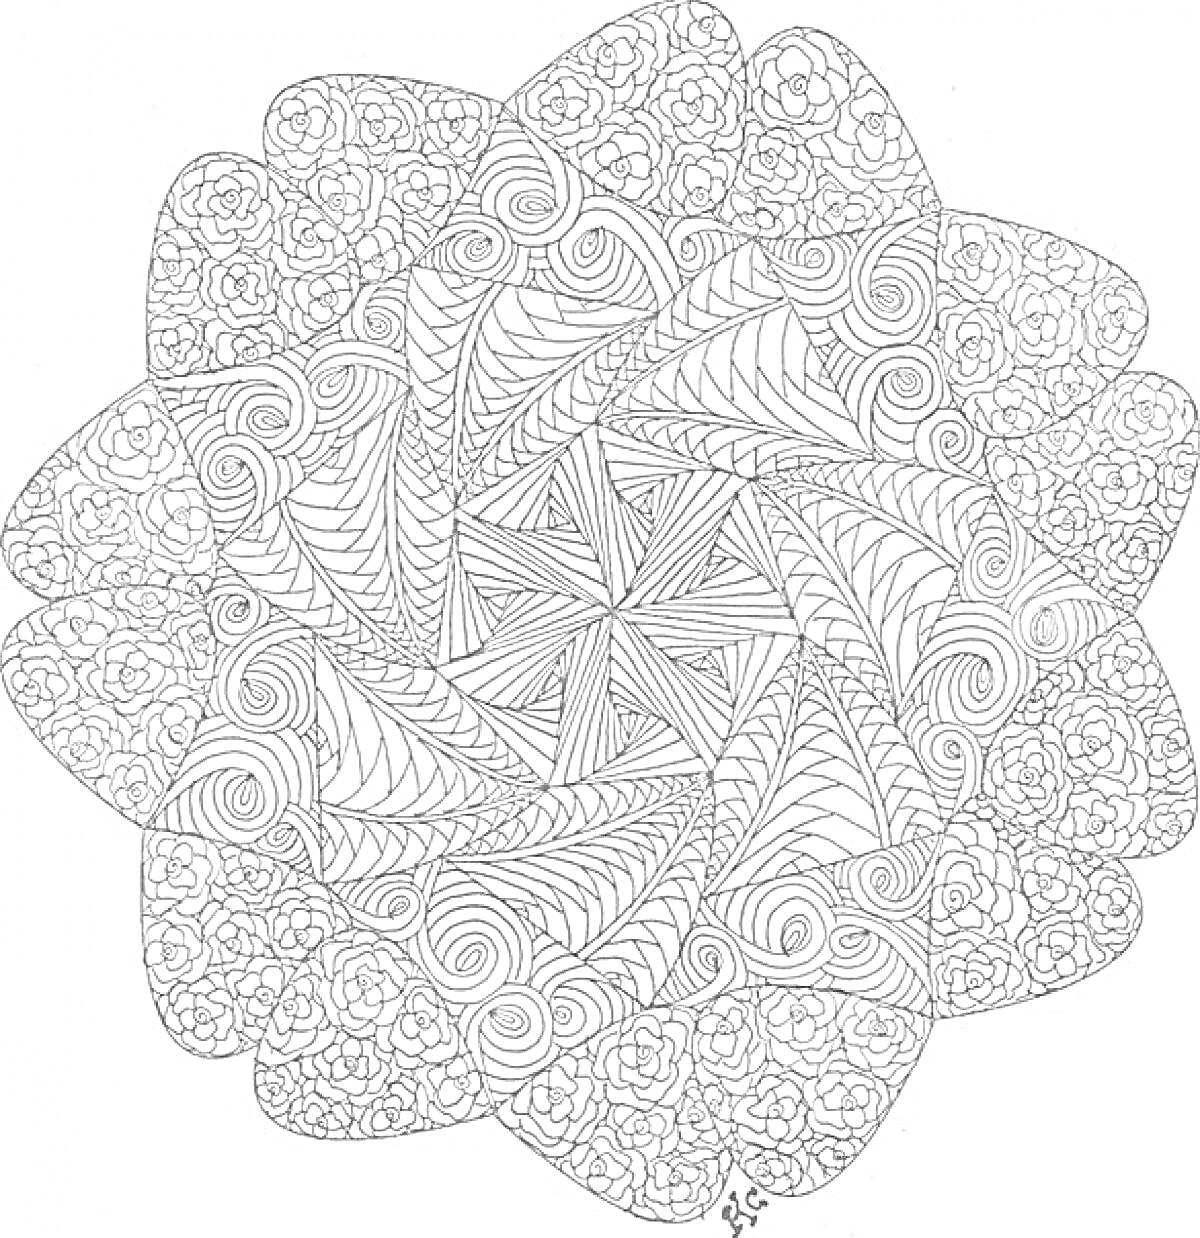 Цветочный узор с абстрактными элементами (спирали, линии, узоры)